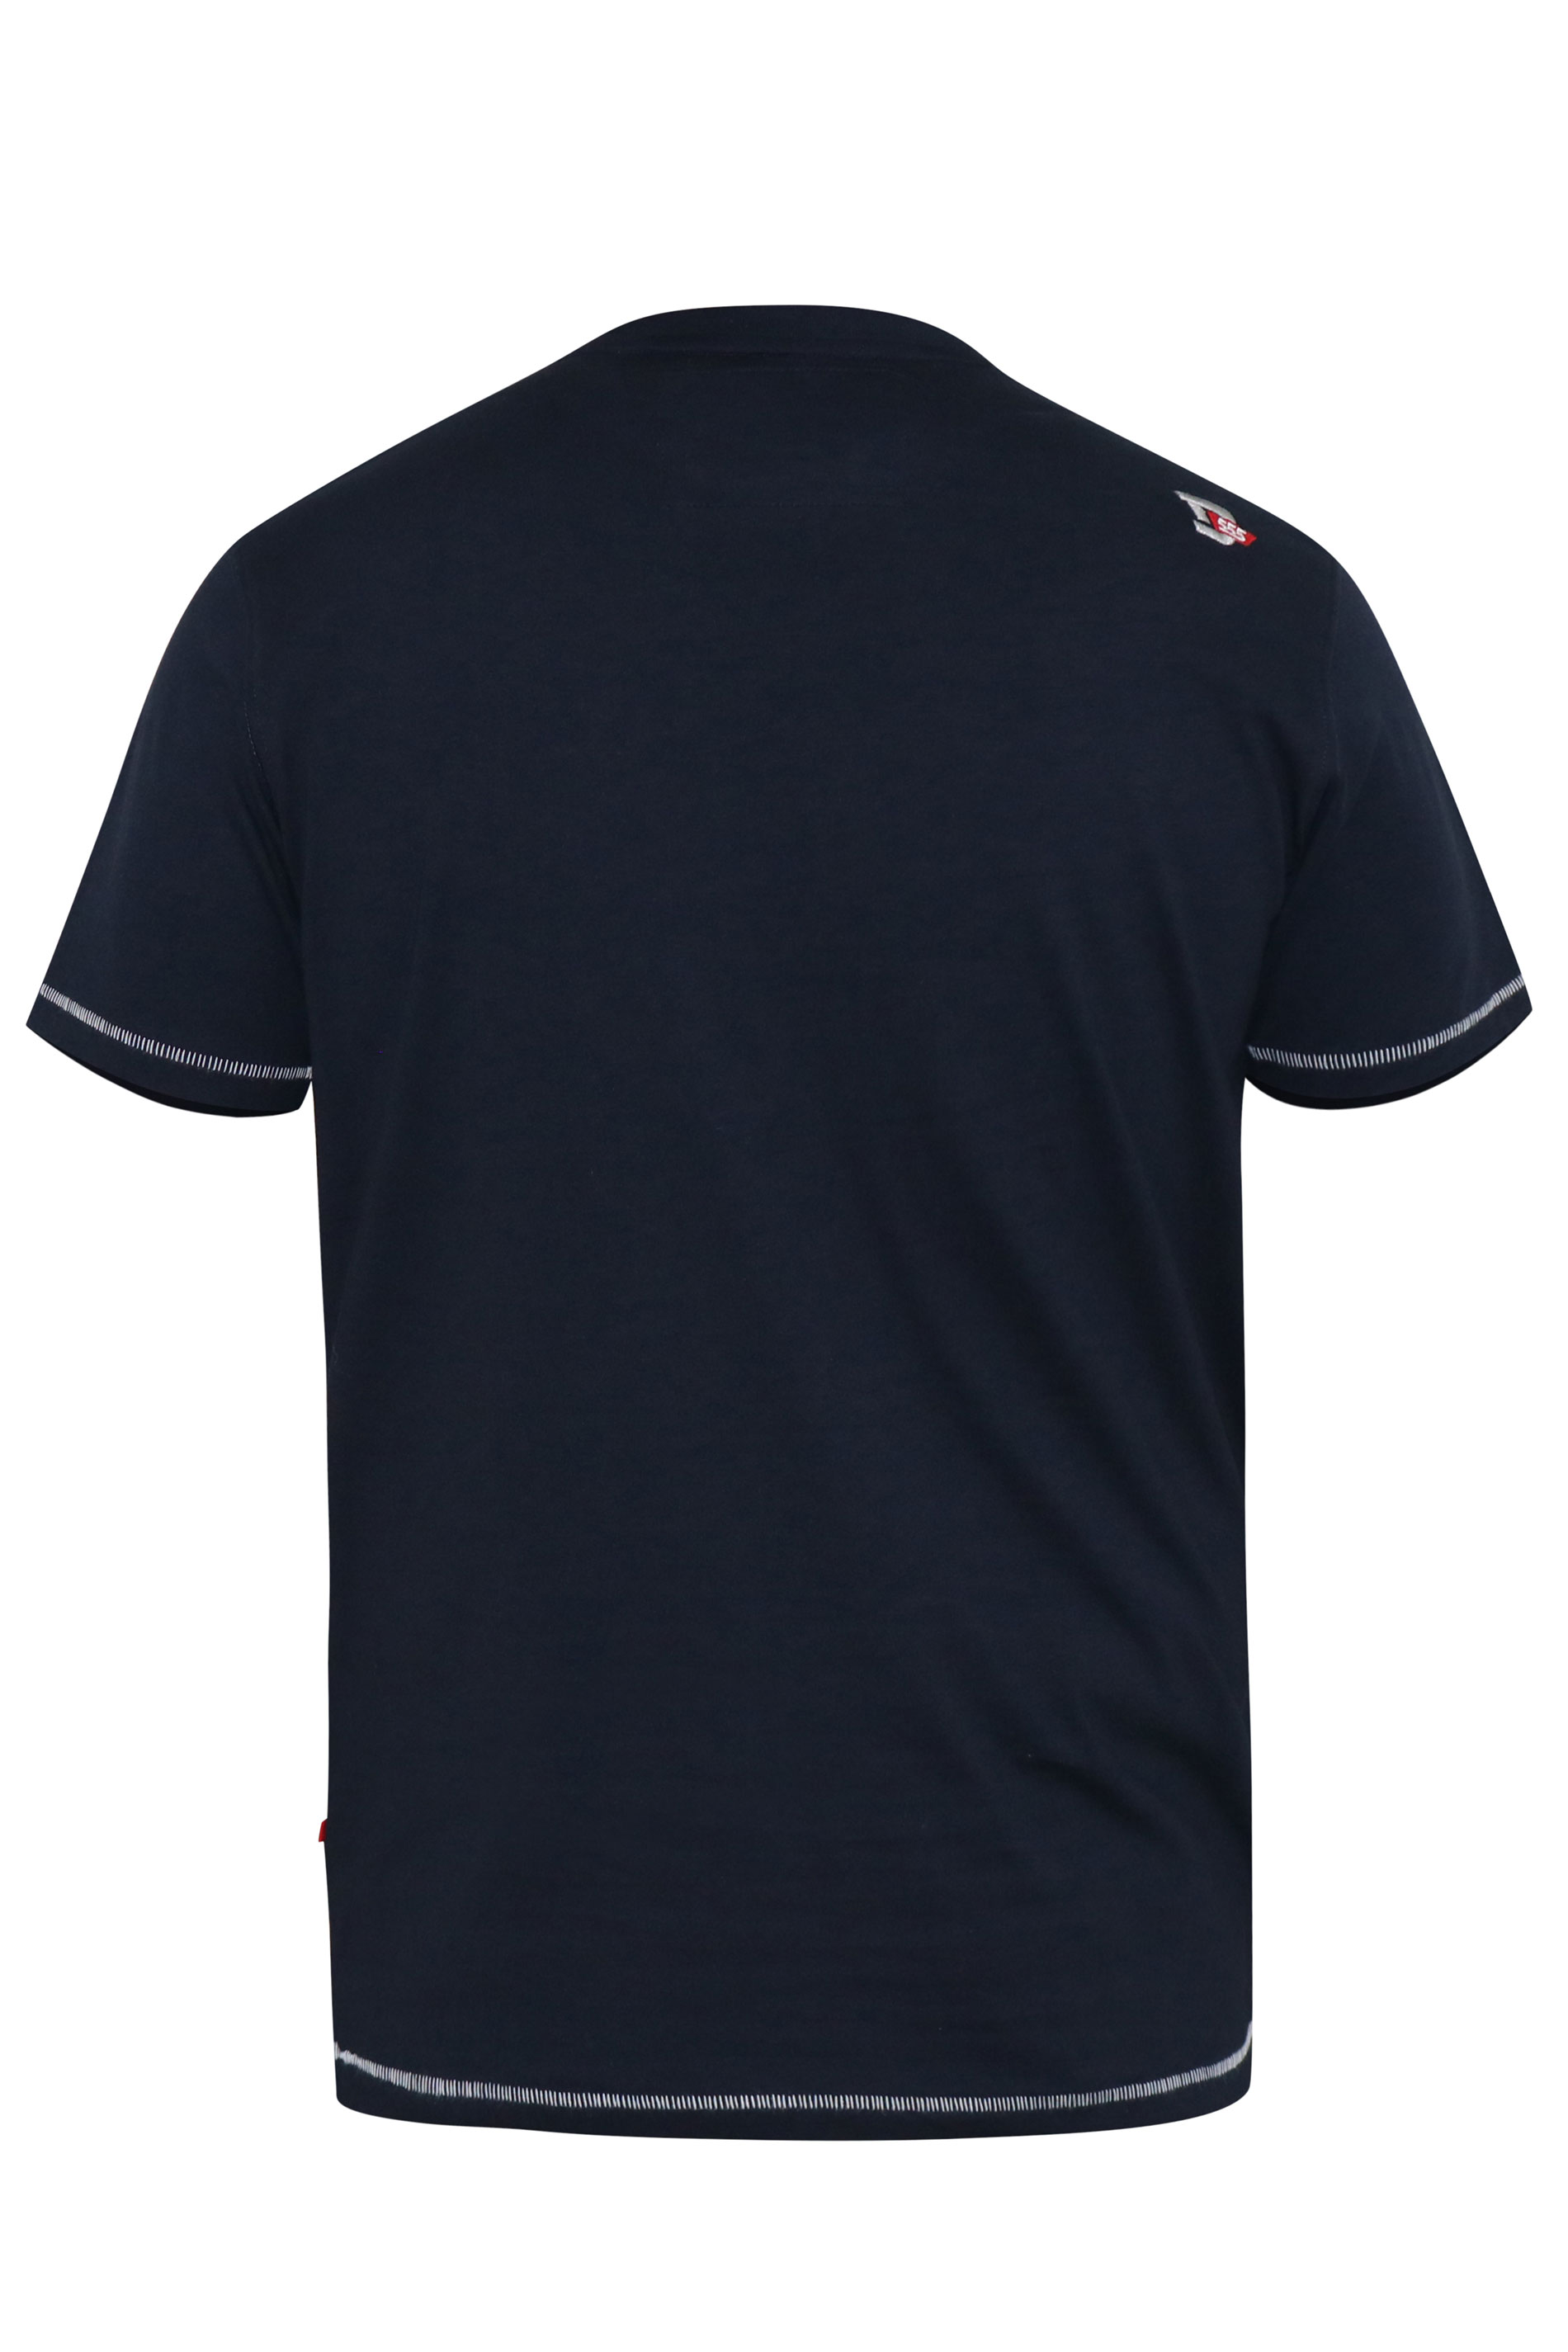 D555 Navy Blue Motorbike Print T-Shirt | BadRhino